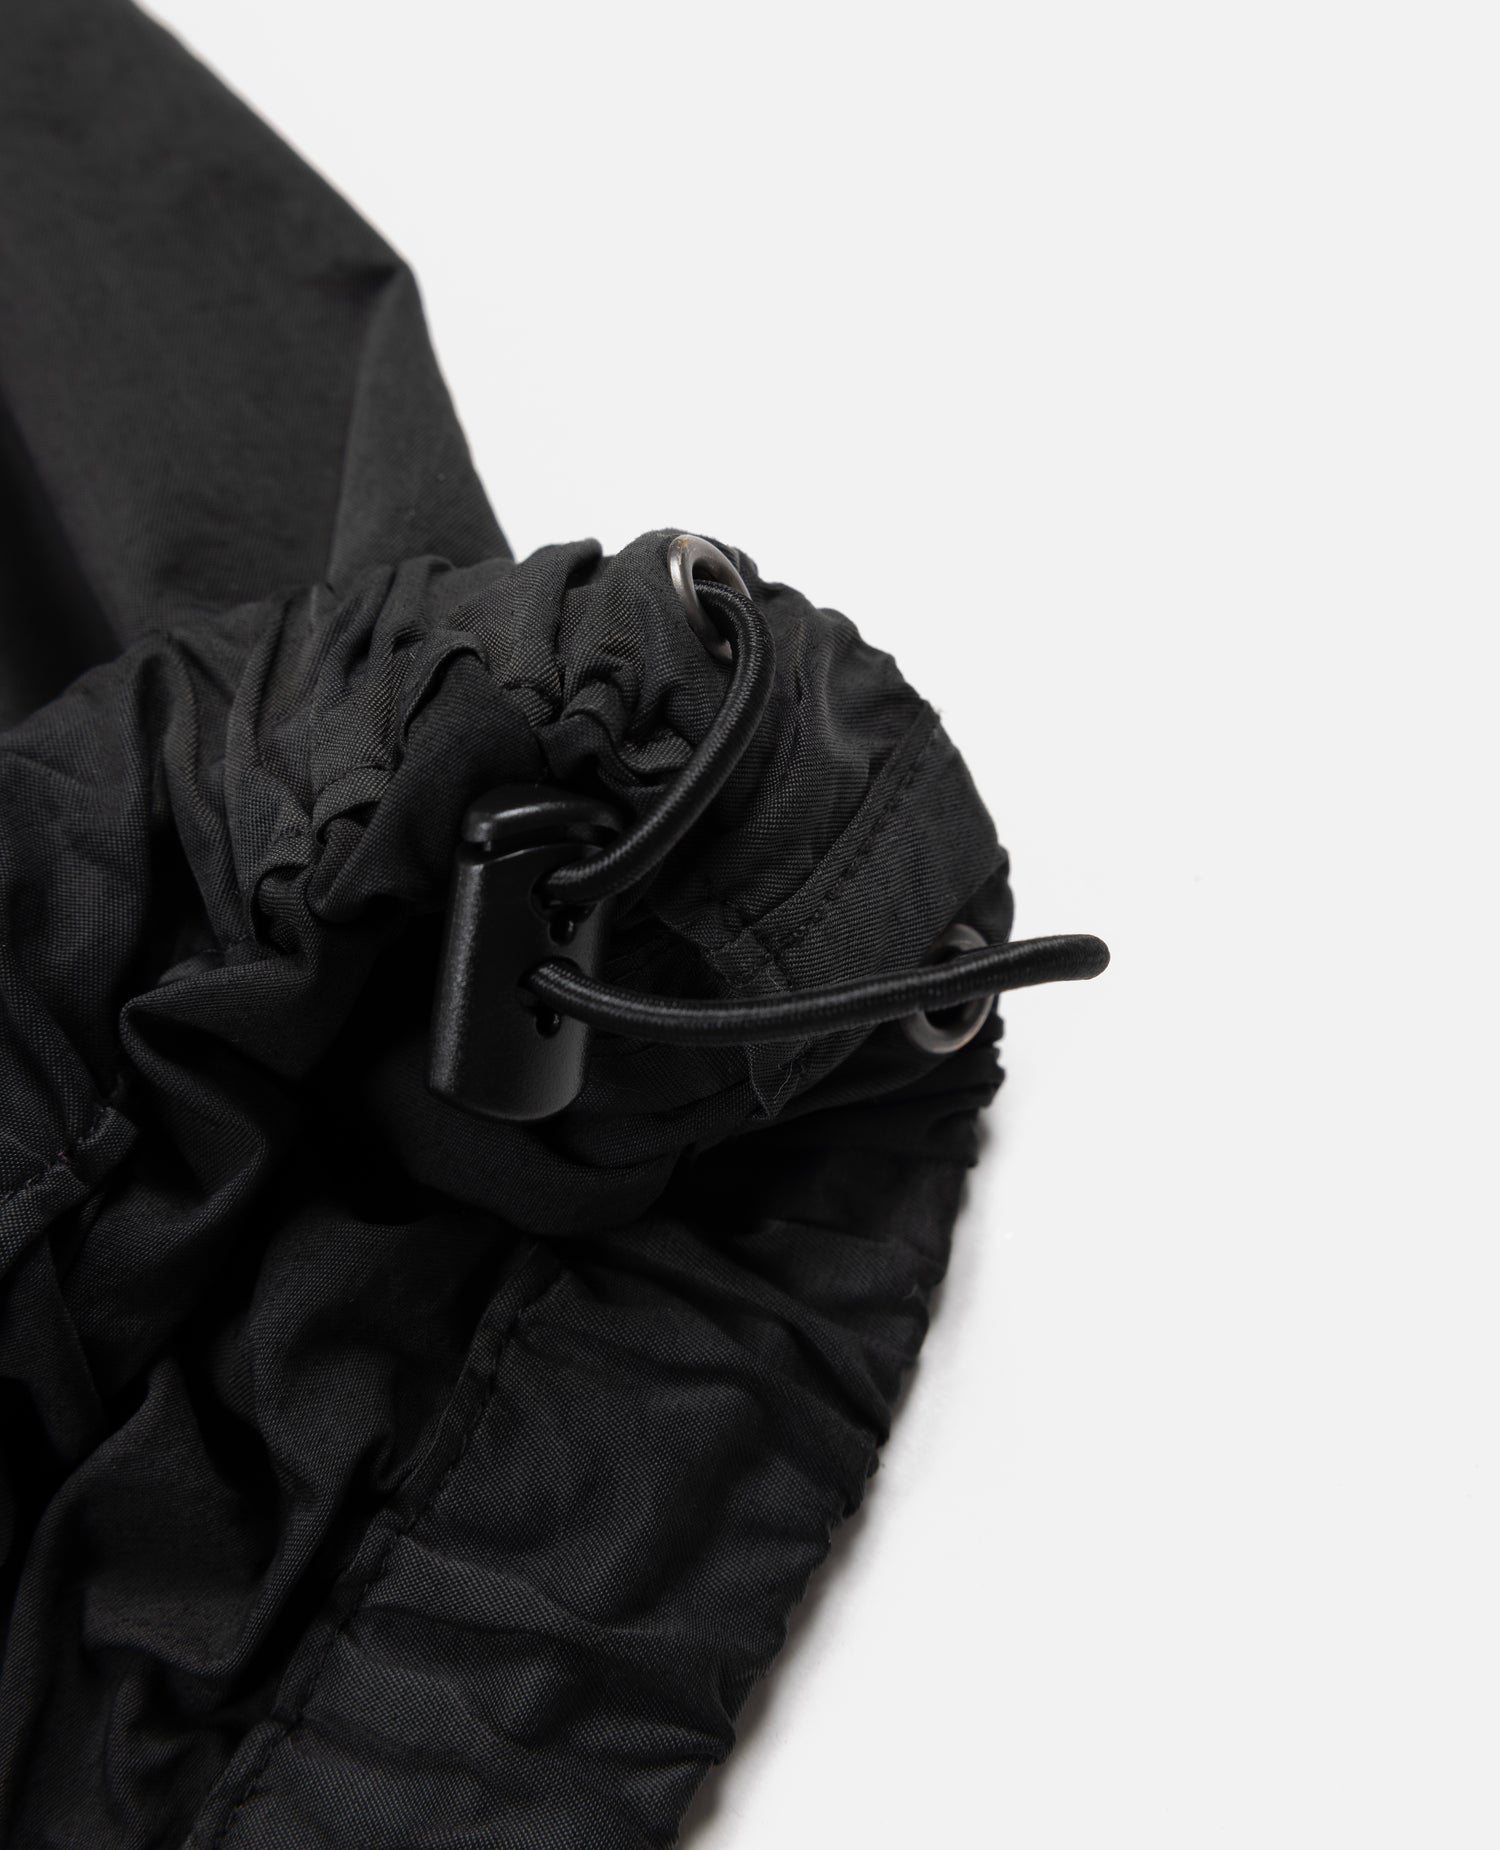 Patta GMT Pigment Dye Nylon Jacket (Pirate Black)